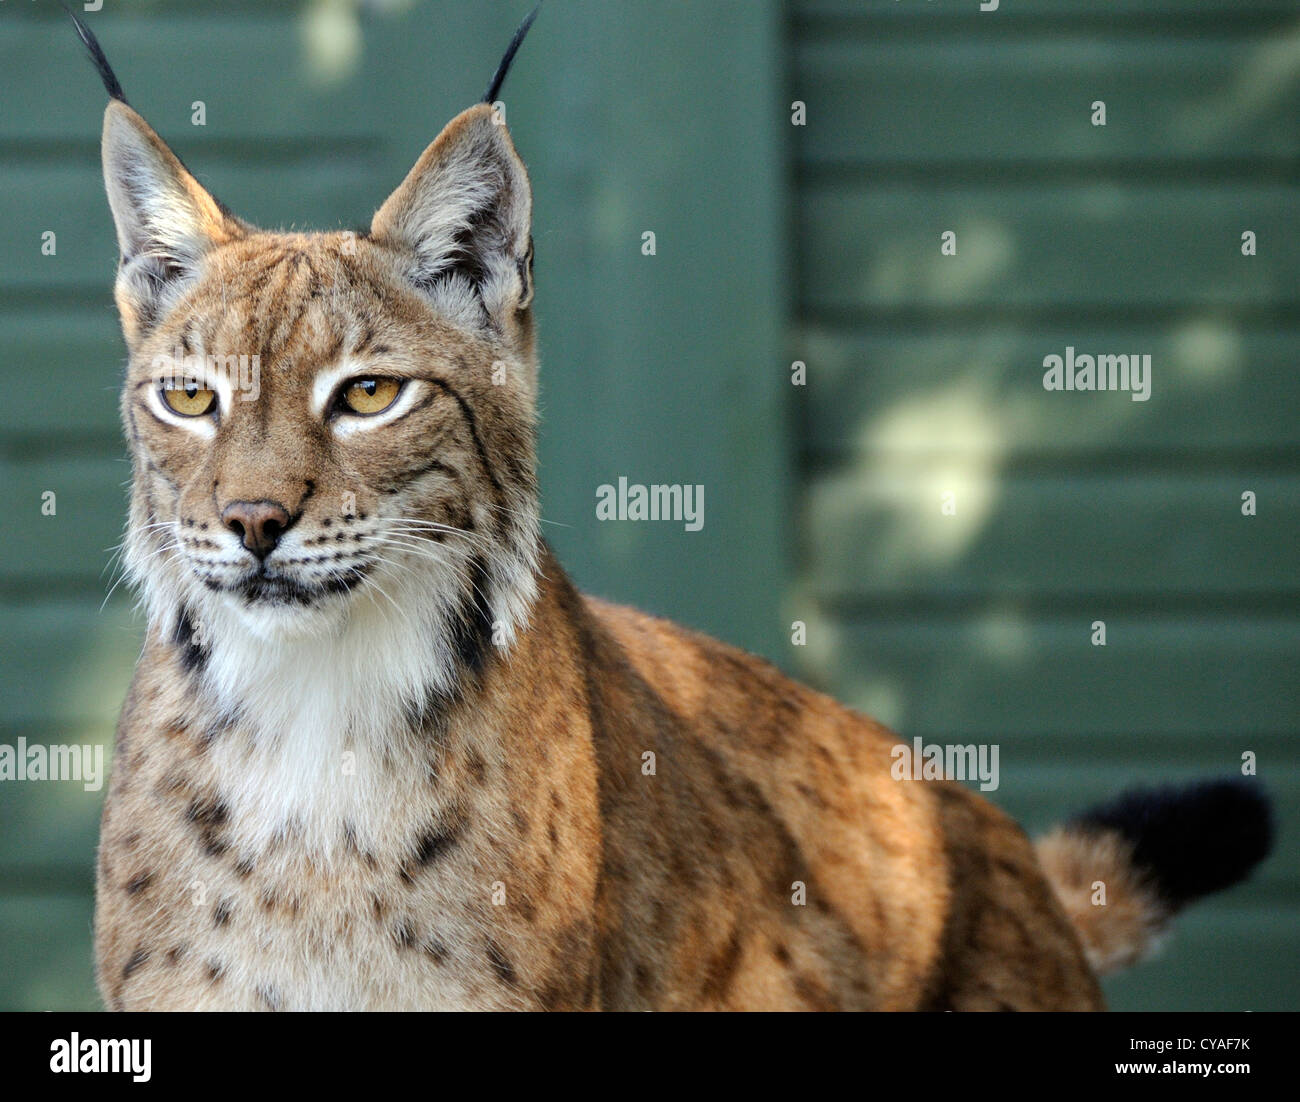 Lynx (Felis lynx) dans une cage. Des animaux en captivité. La Fondation du patrimoine, de la faune Smarden, Kent. Banque D'Images